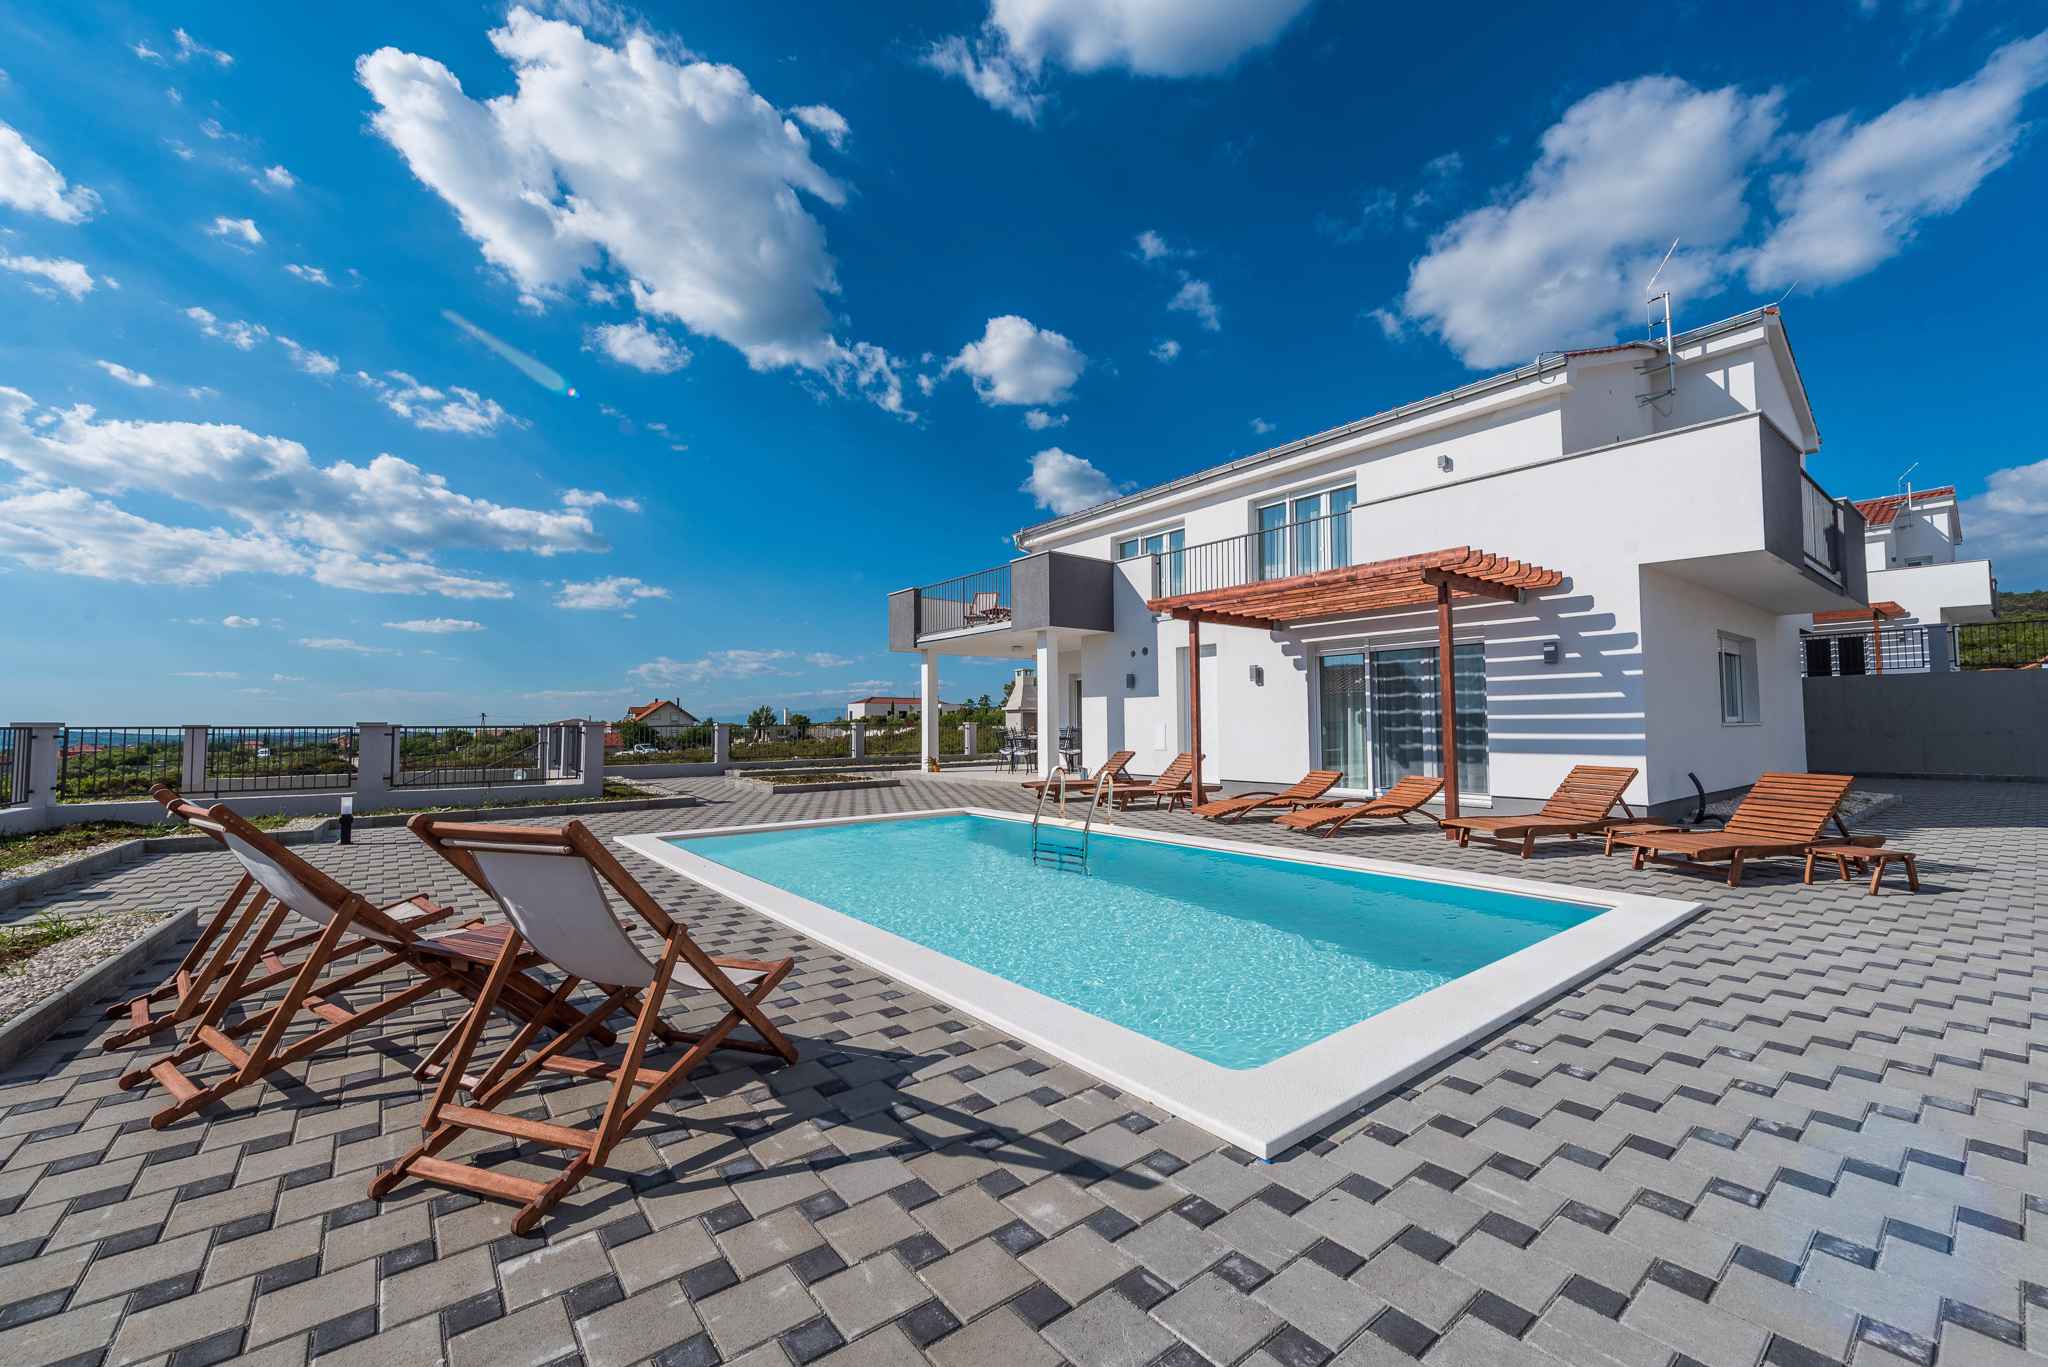 Villa mit Pool , Wlan und Klimaanlage Ferienhaus in Dalmatien